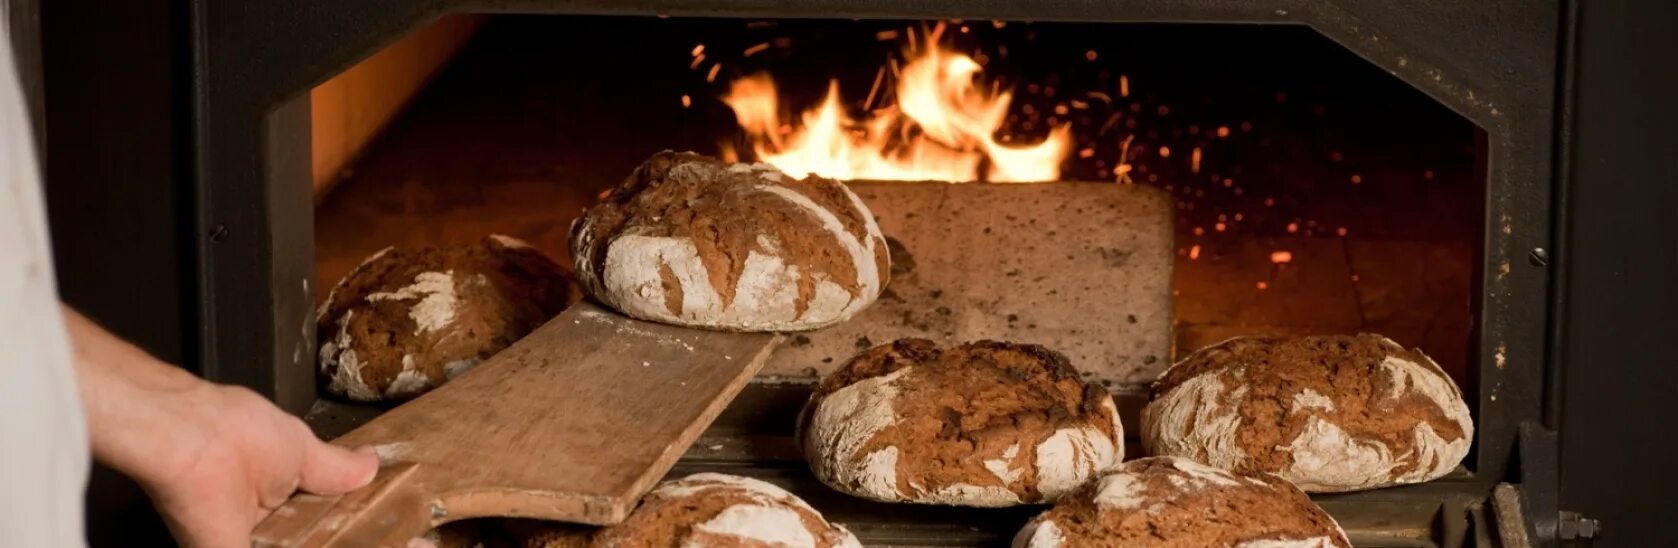 В риме умевший печь хлеб раб. Печка для хлеба. Хлеб в печи. Печь хлеб в печке. Русская печь для выпекания хлеба..